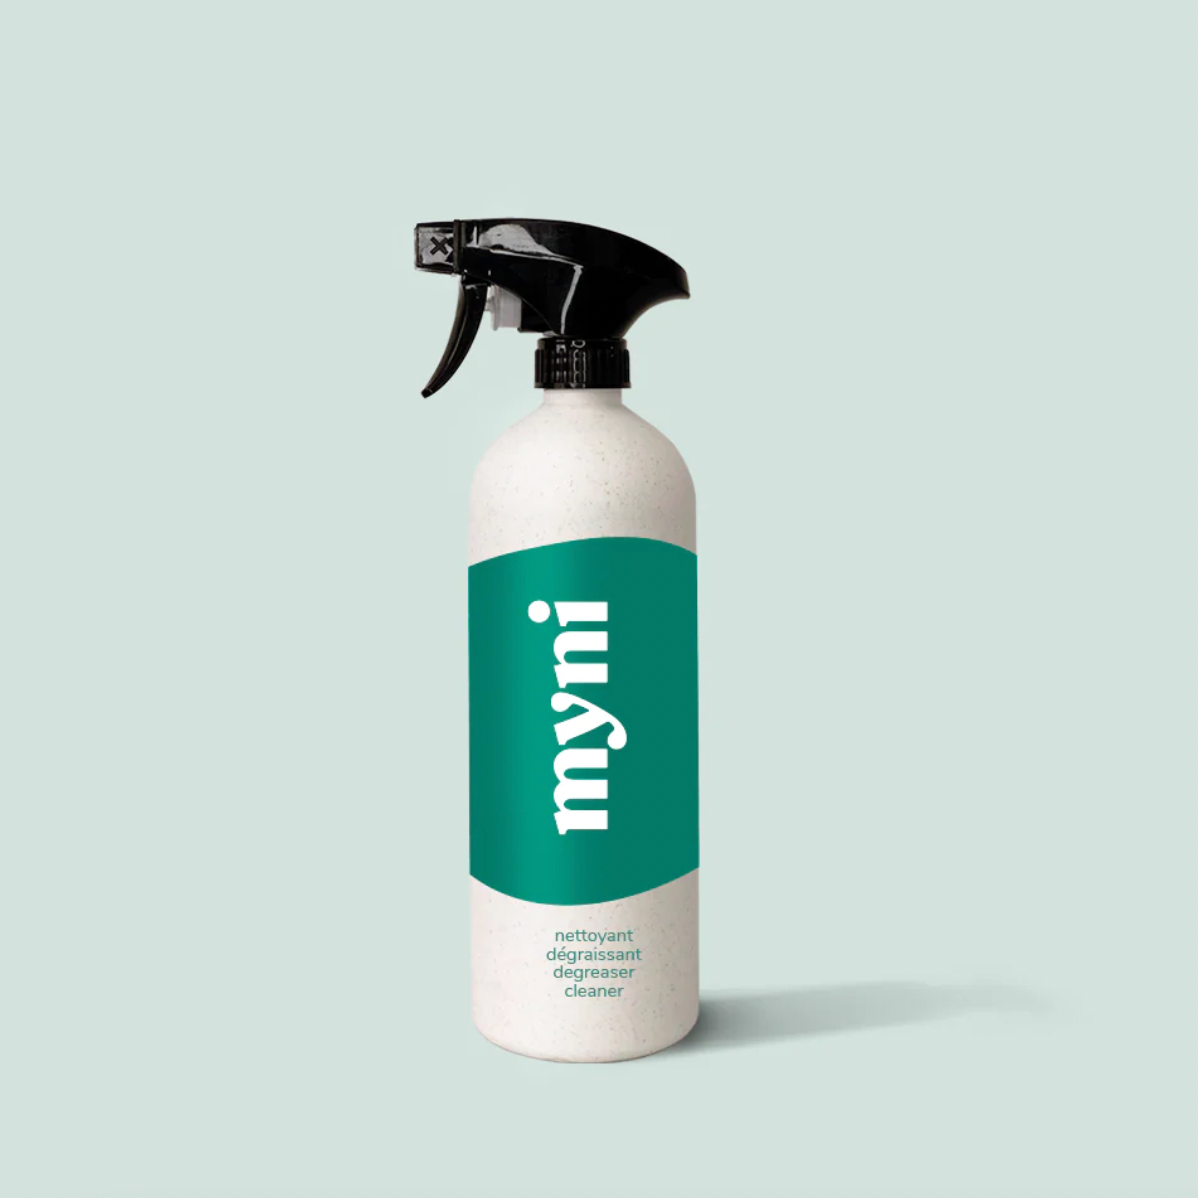 Myni Spray Bottle